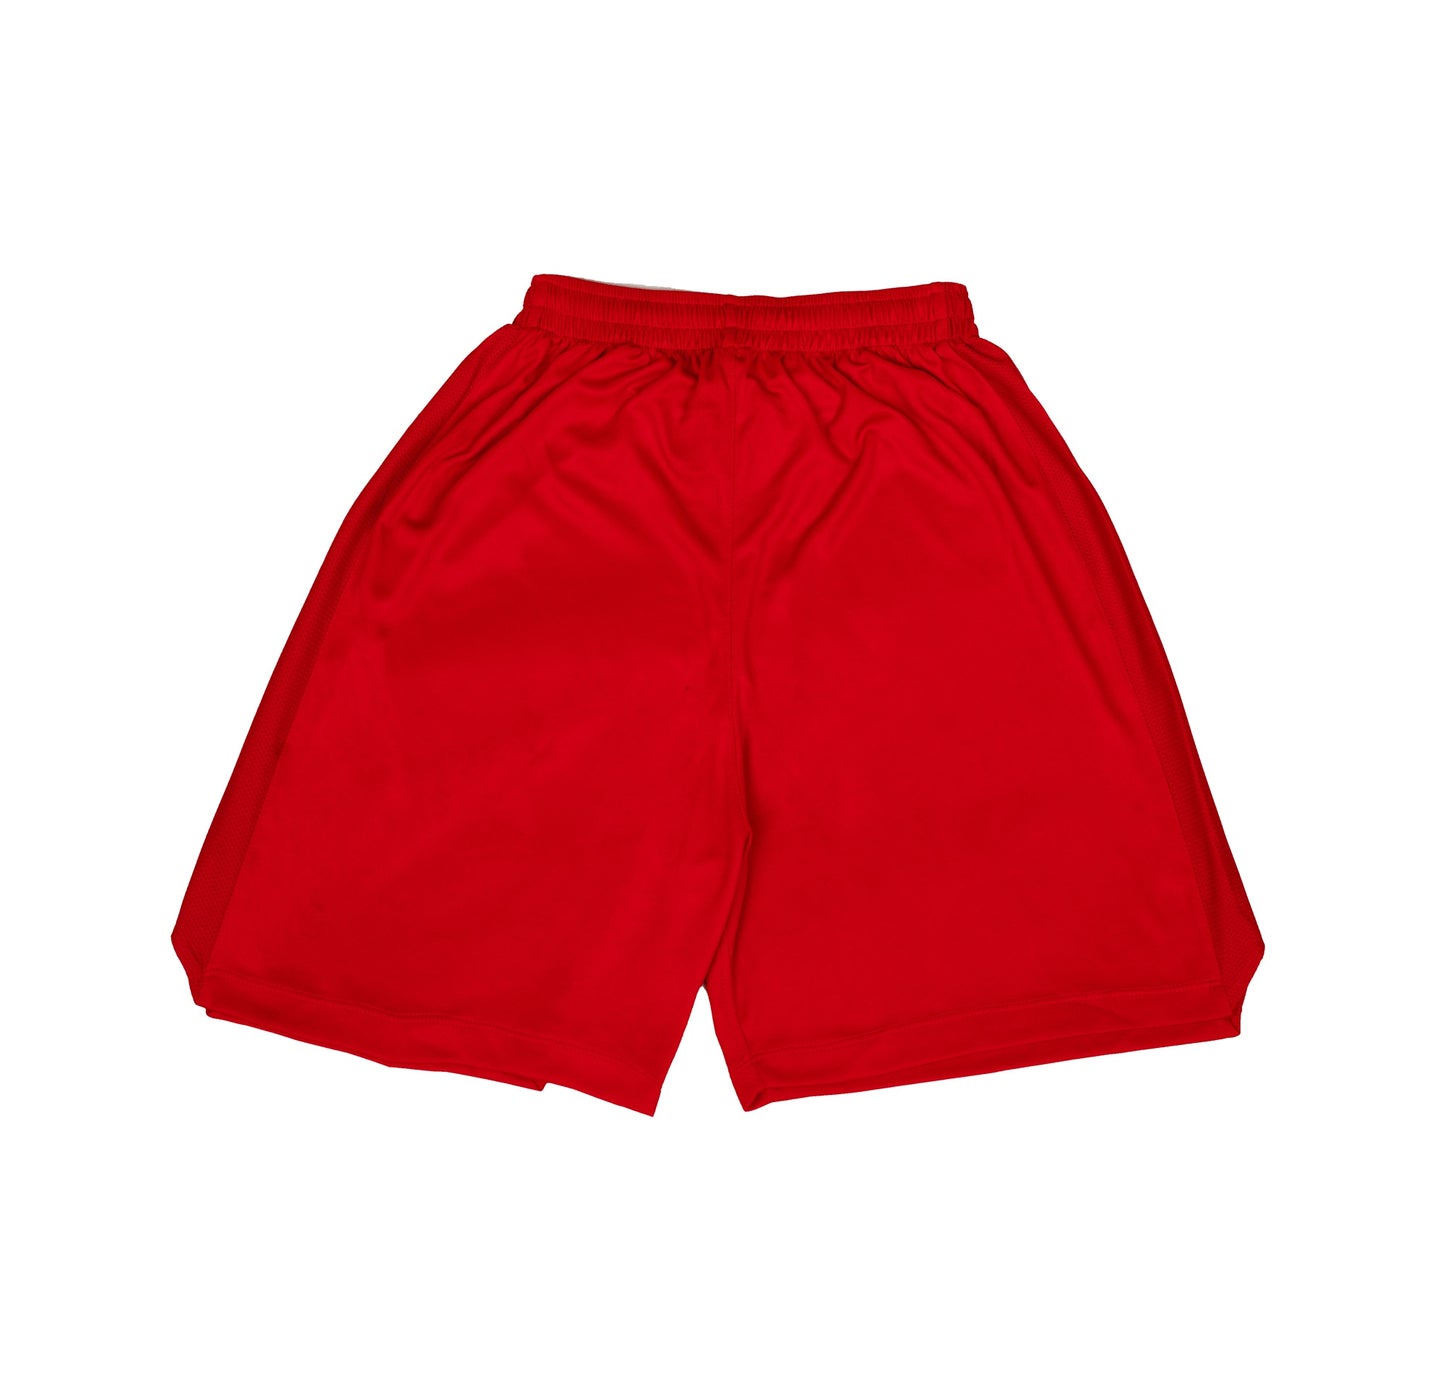 AZA Short Pants Basketball Basic Tone to Tone - Red